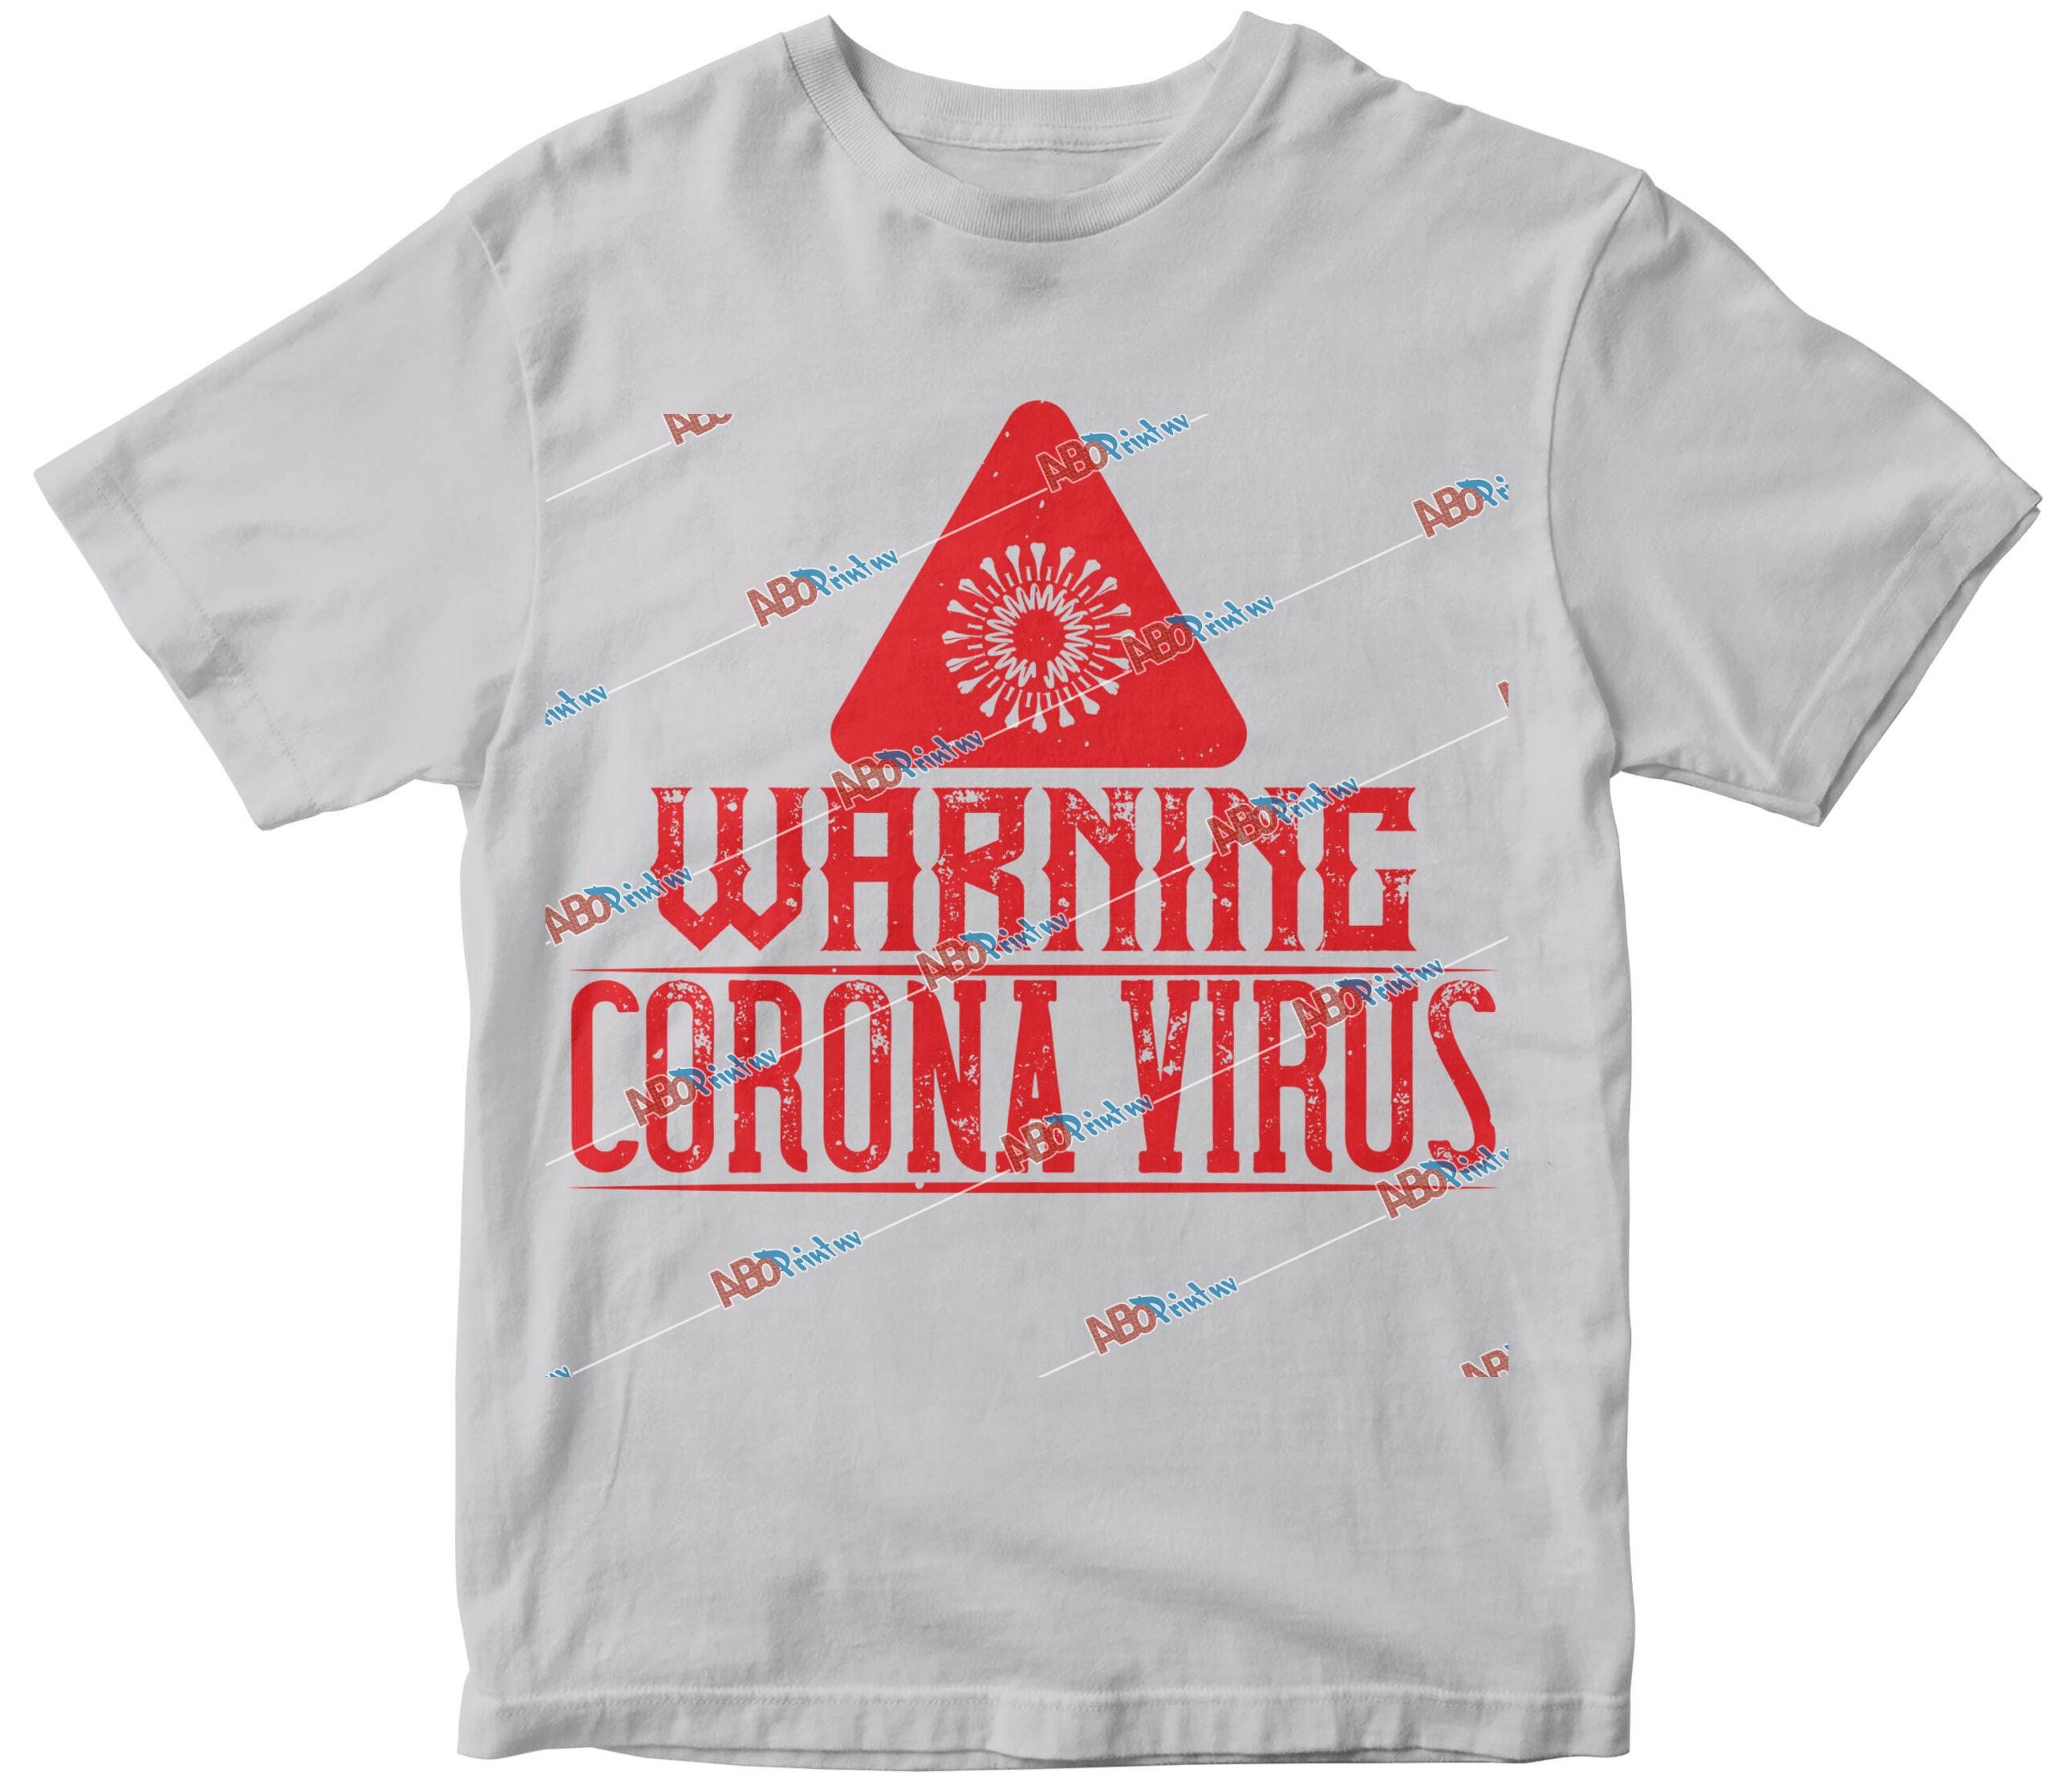 Warning corona virus one.jpg